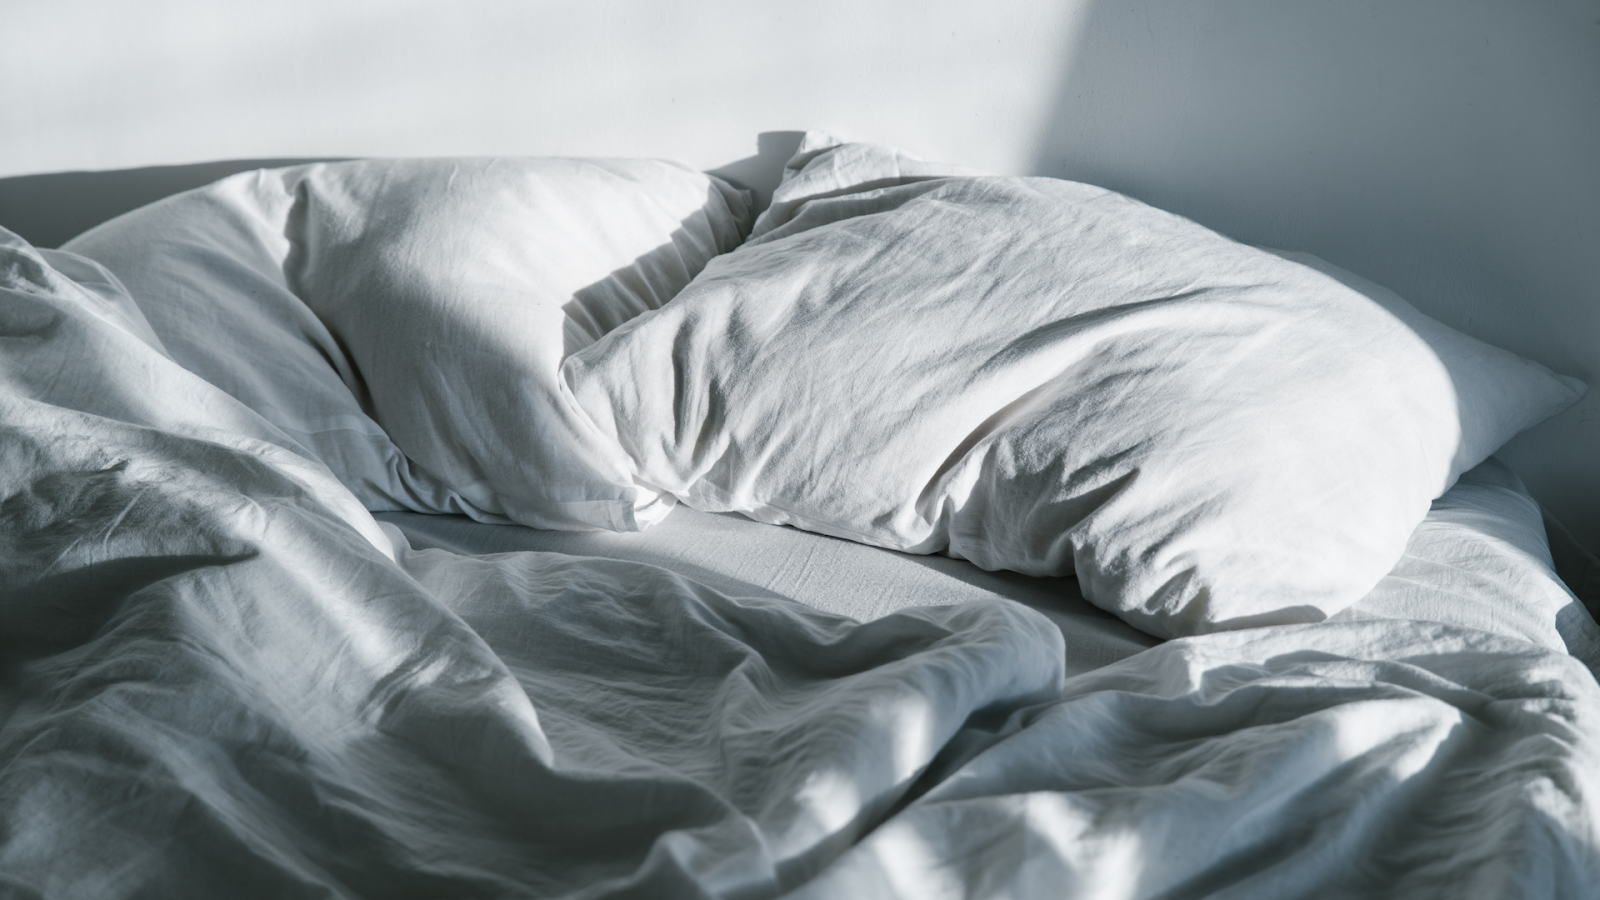 Ilustračný obrázok k článku o spánku - čistý vankúš a prikrývka uložené na posteli.